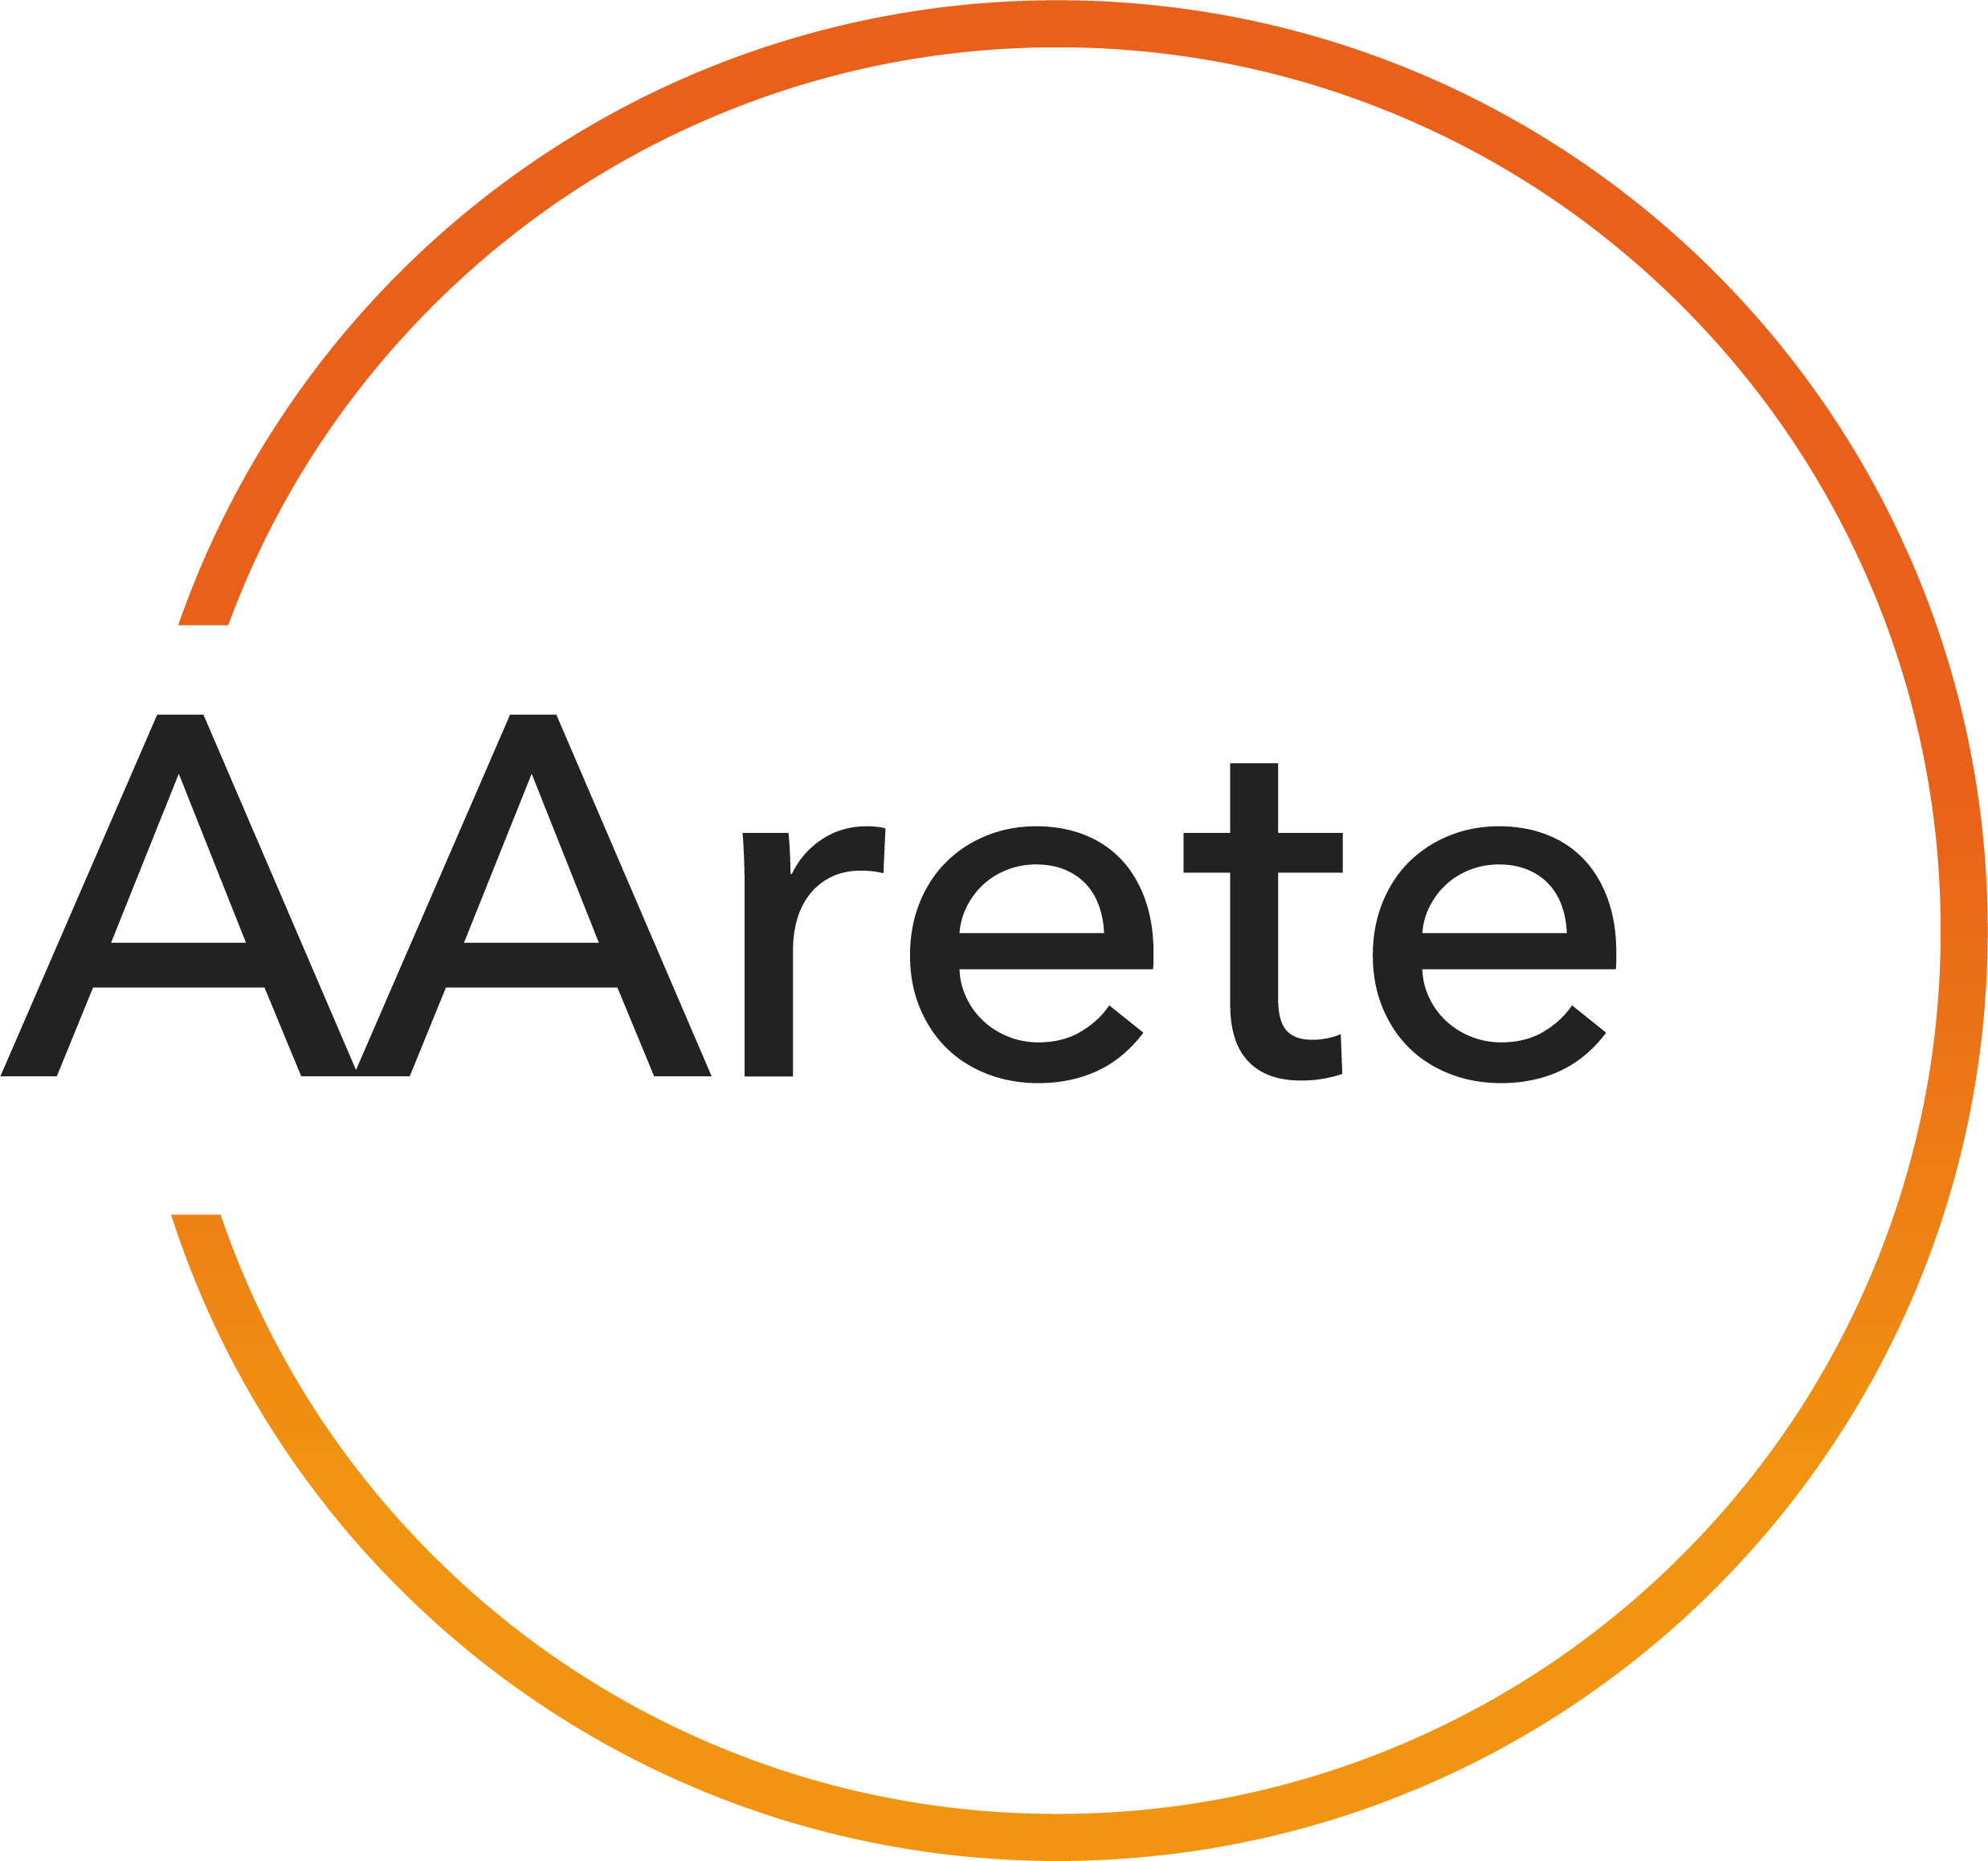 AArete Company Logo